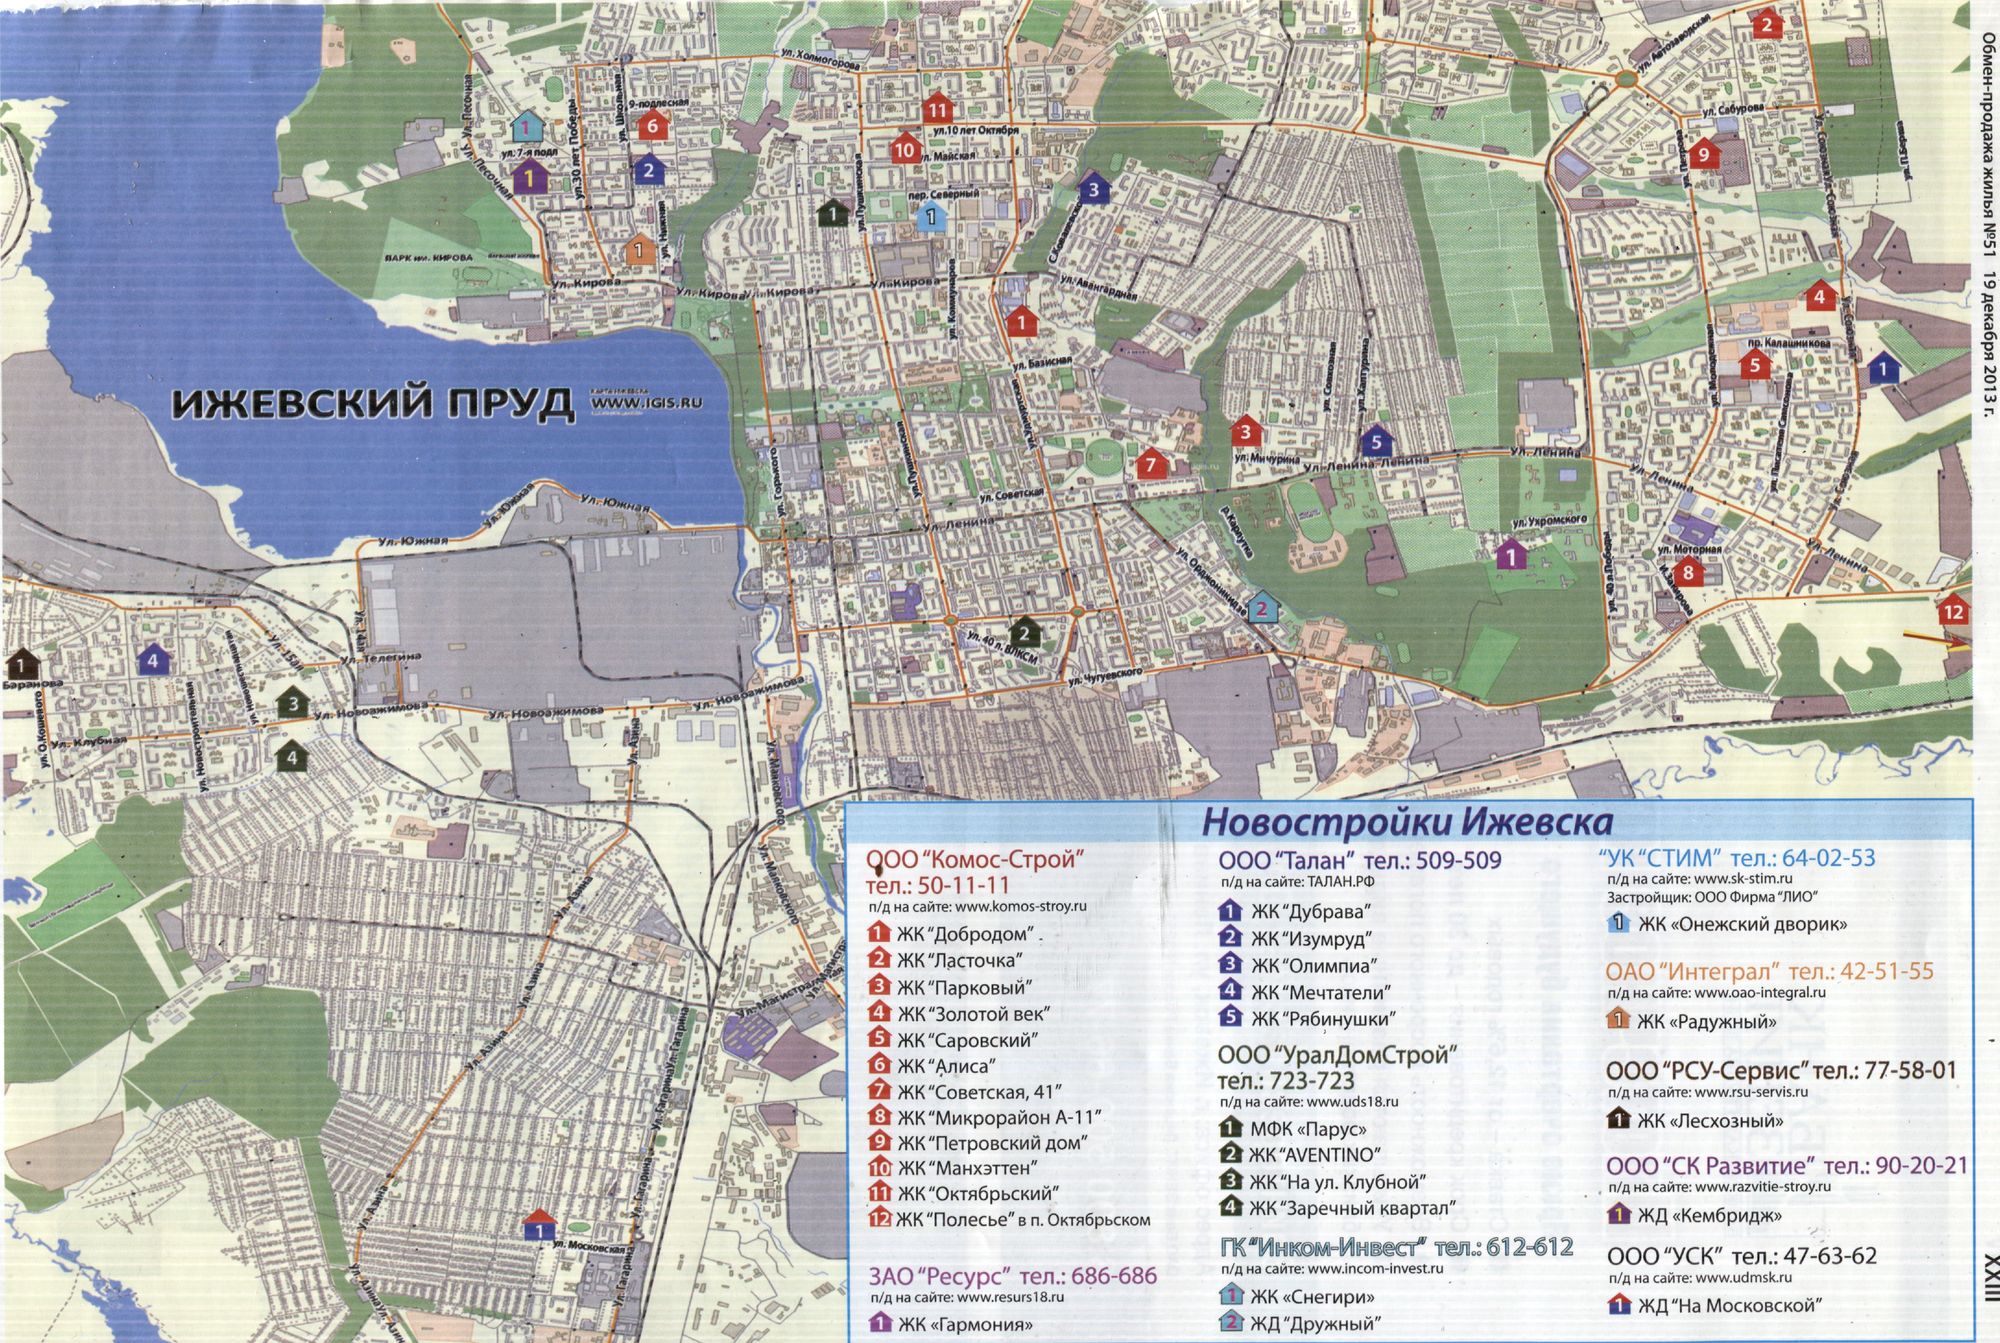 Новостройки Ижевска. Карта из журнала "Обмен-продажа жилья" №51 от 19 декабря 2013 г.